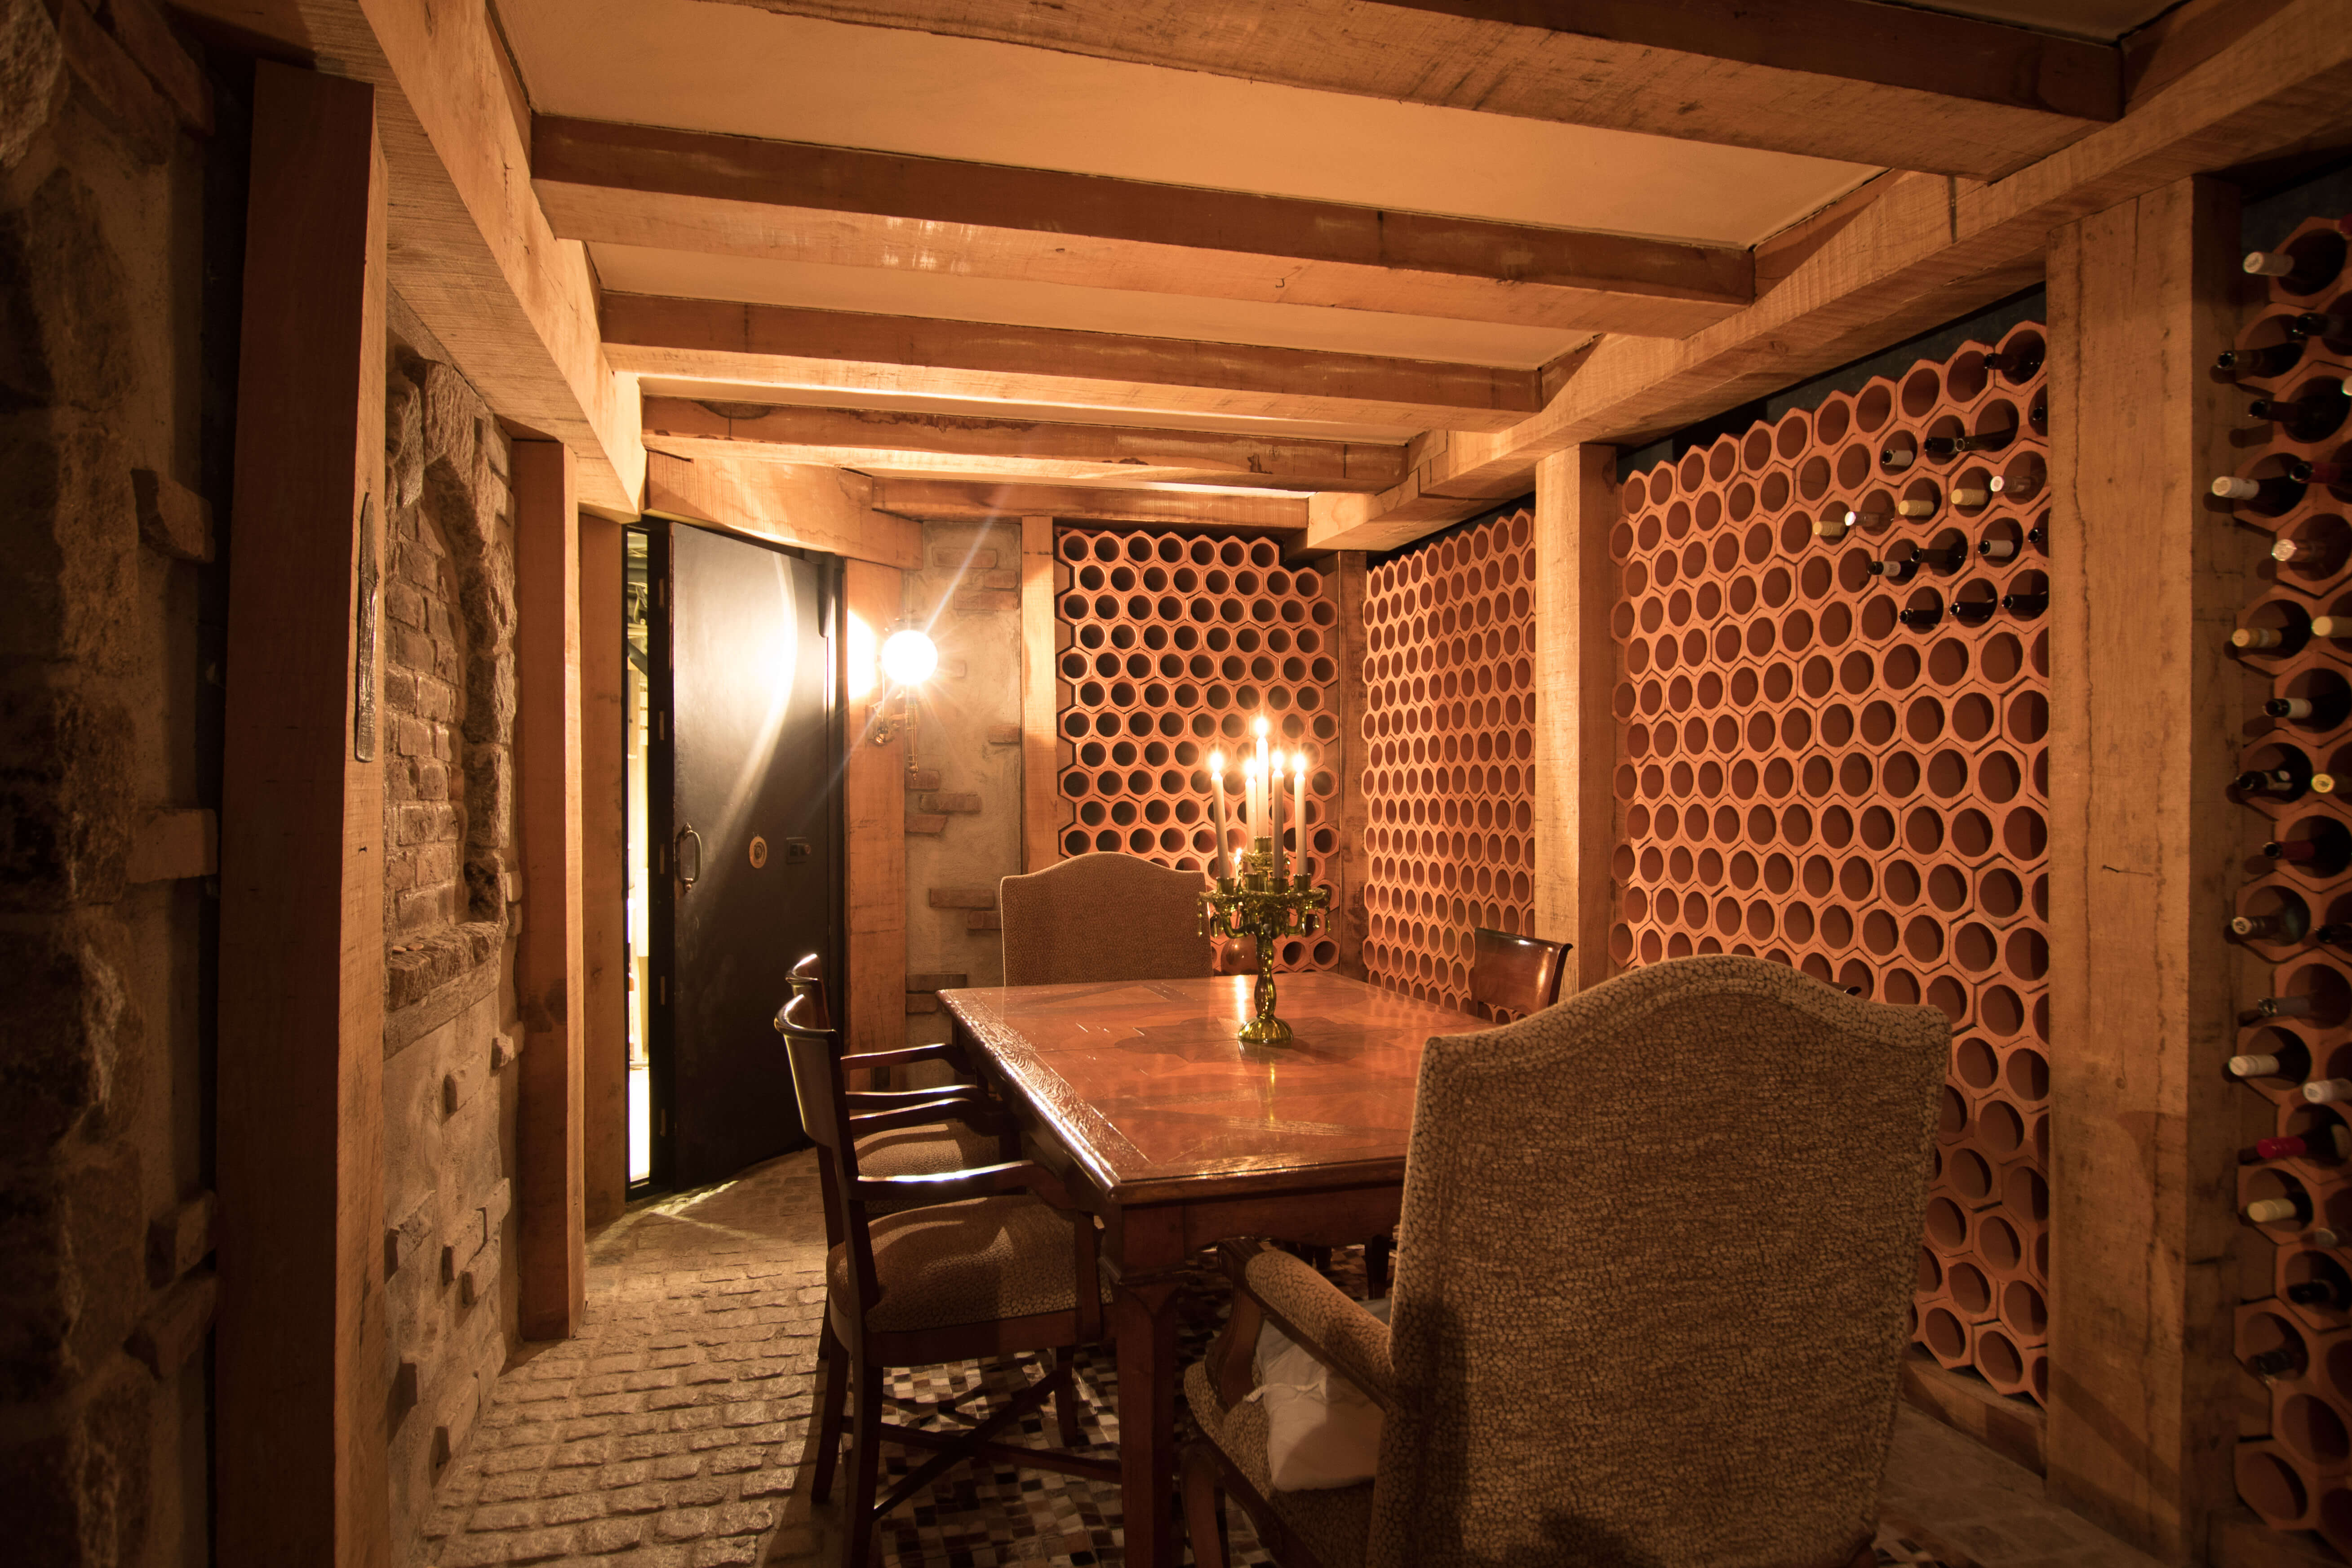 Private bodega and wine cellar.